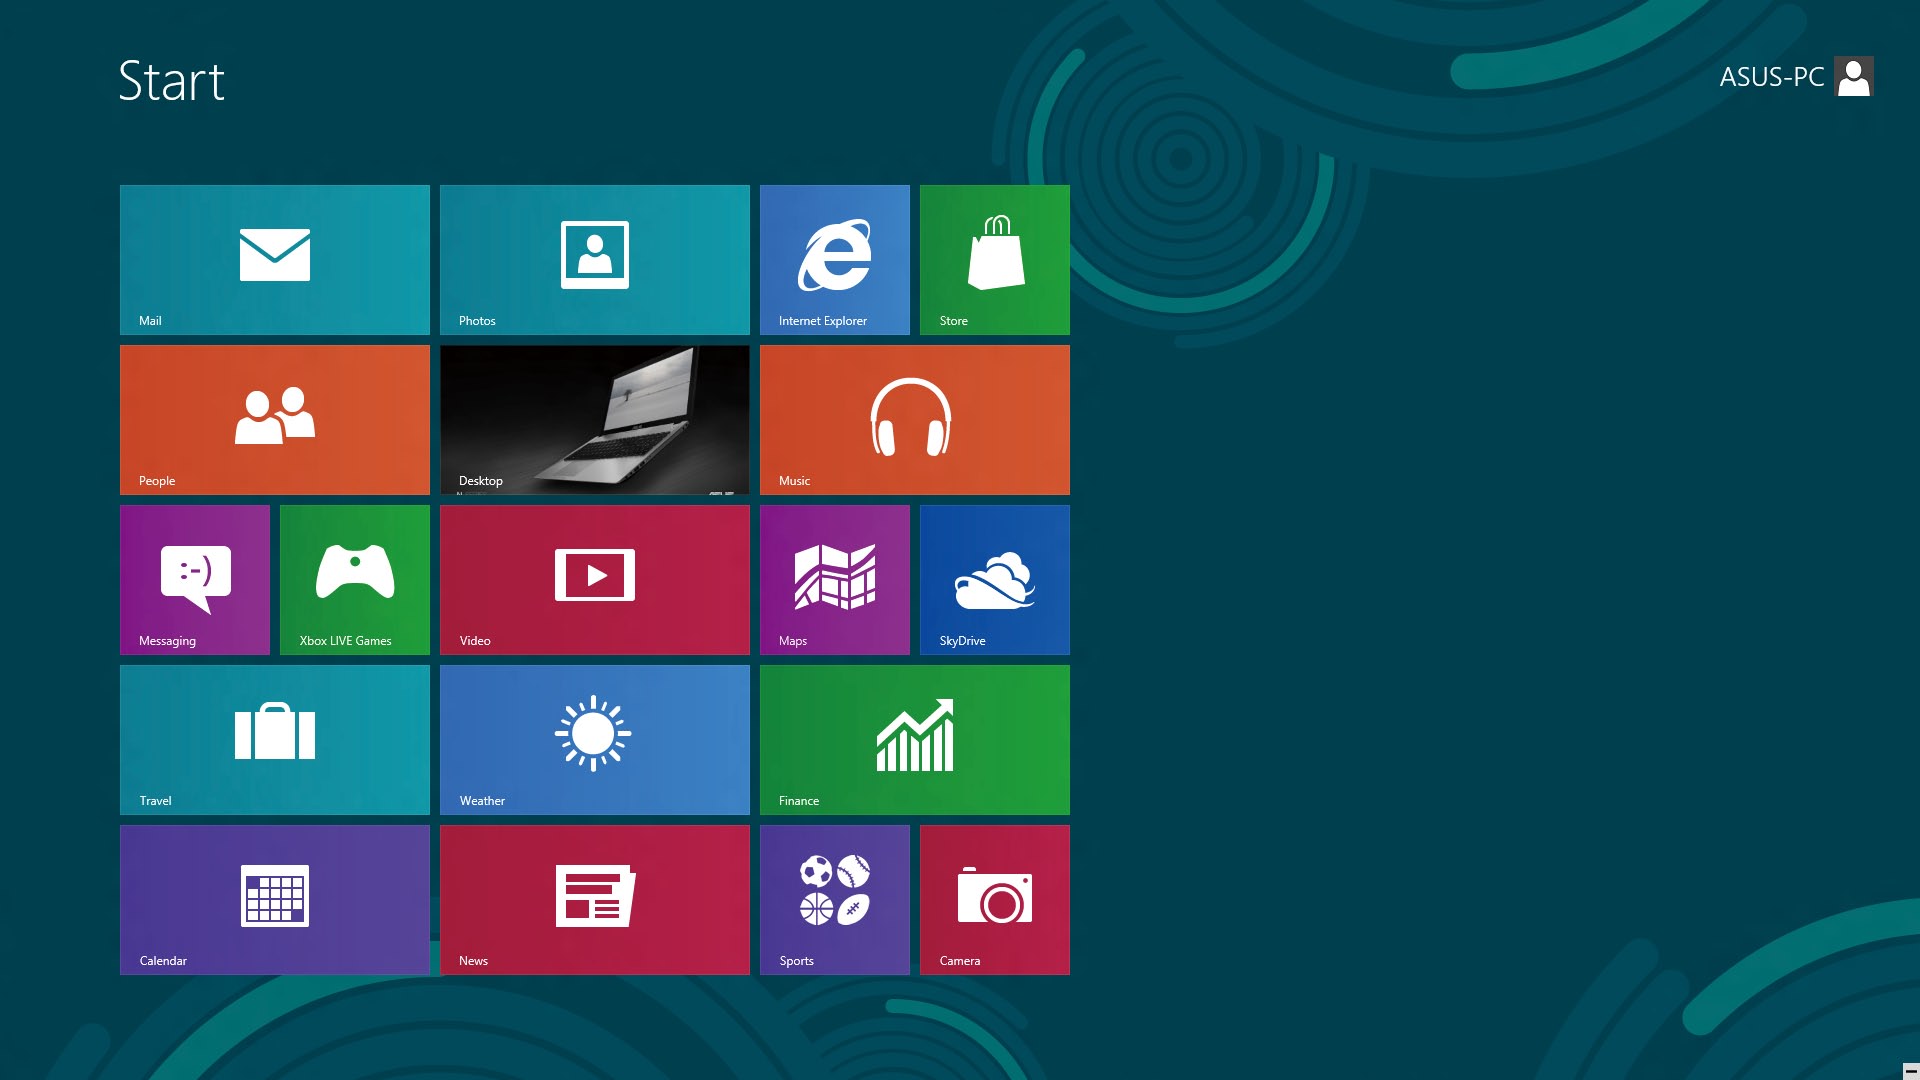 Windows UI Windows användargränssnitt (Ul/user interface) är den bildblocksbaserade visning som används i Windows 8. Den inkluderar följande funktioner som du kan använda när du arbetar med.